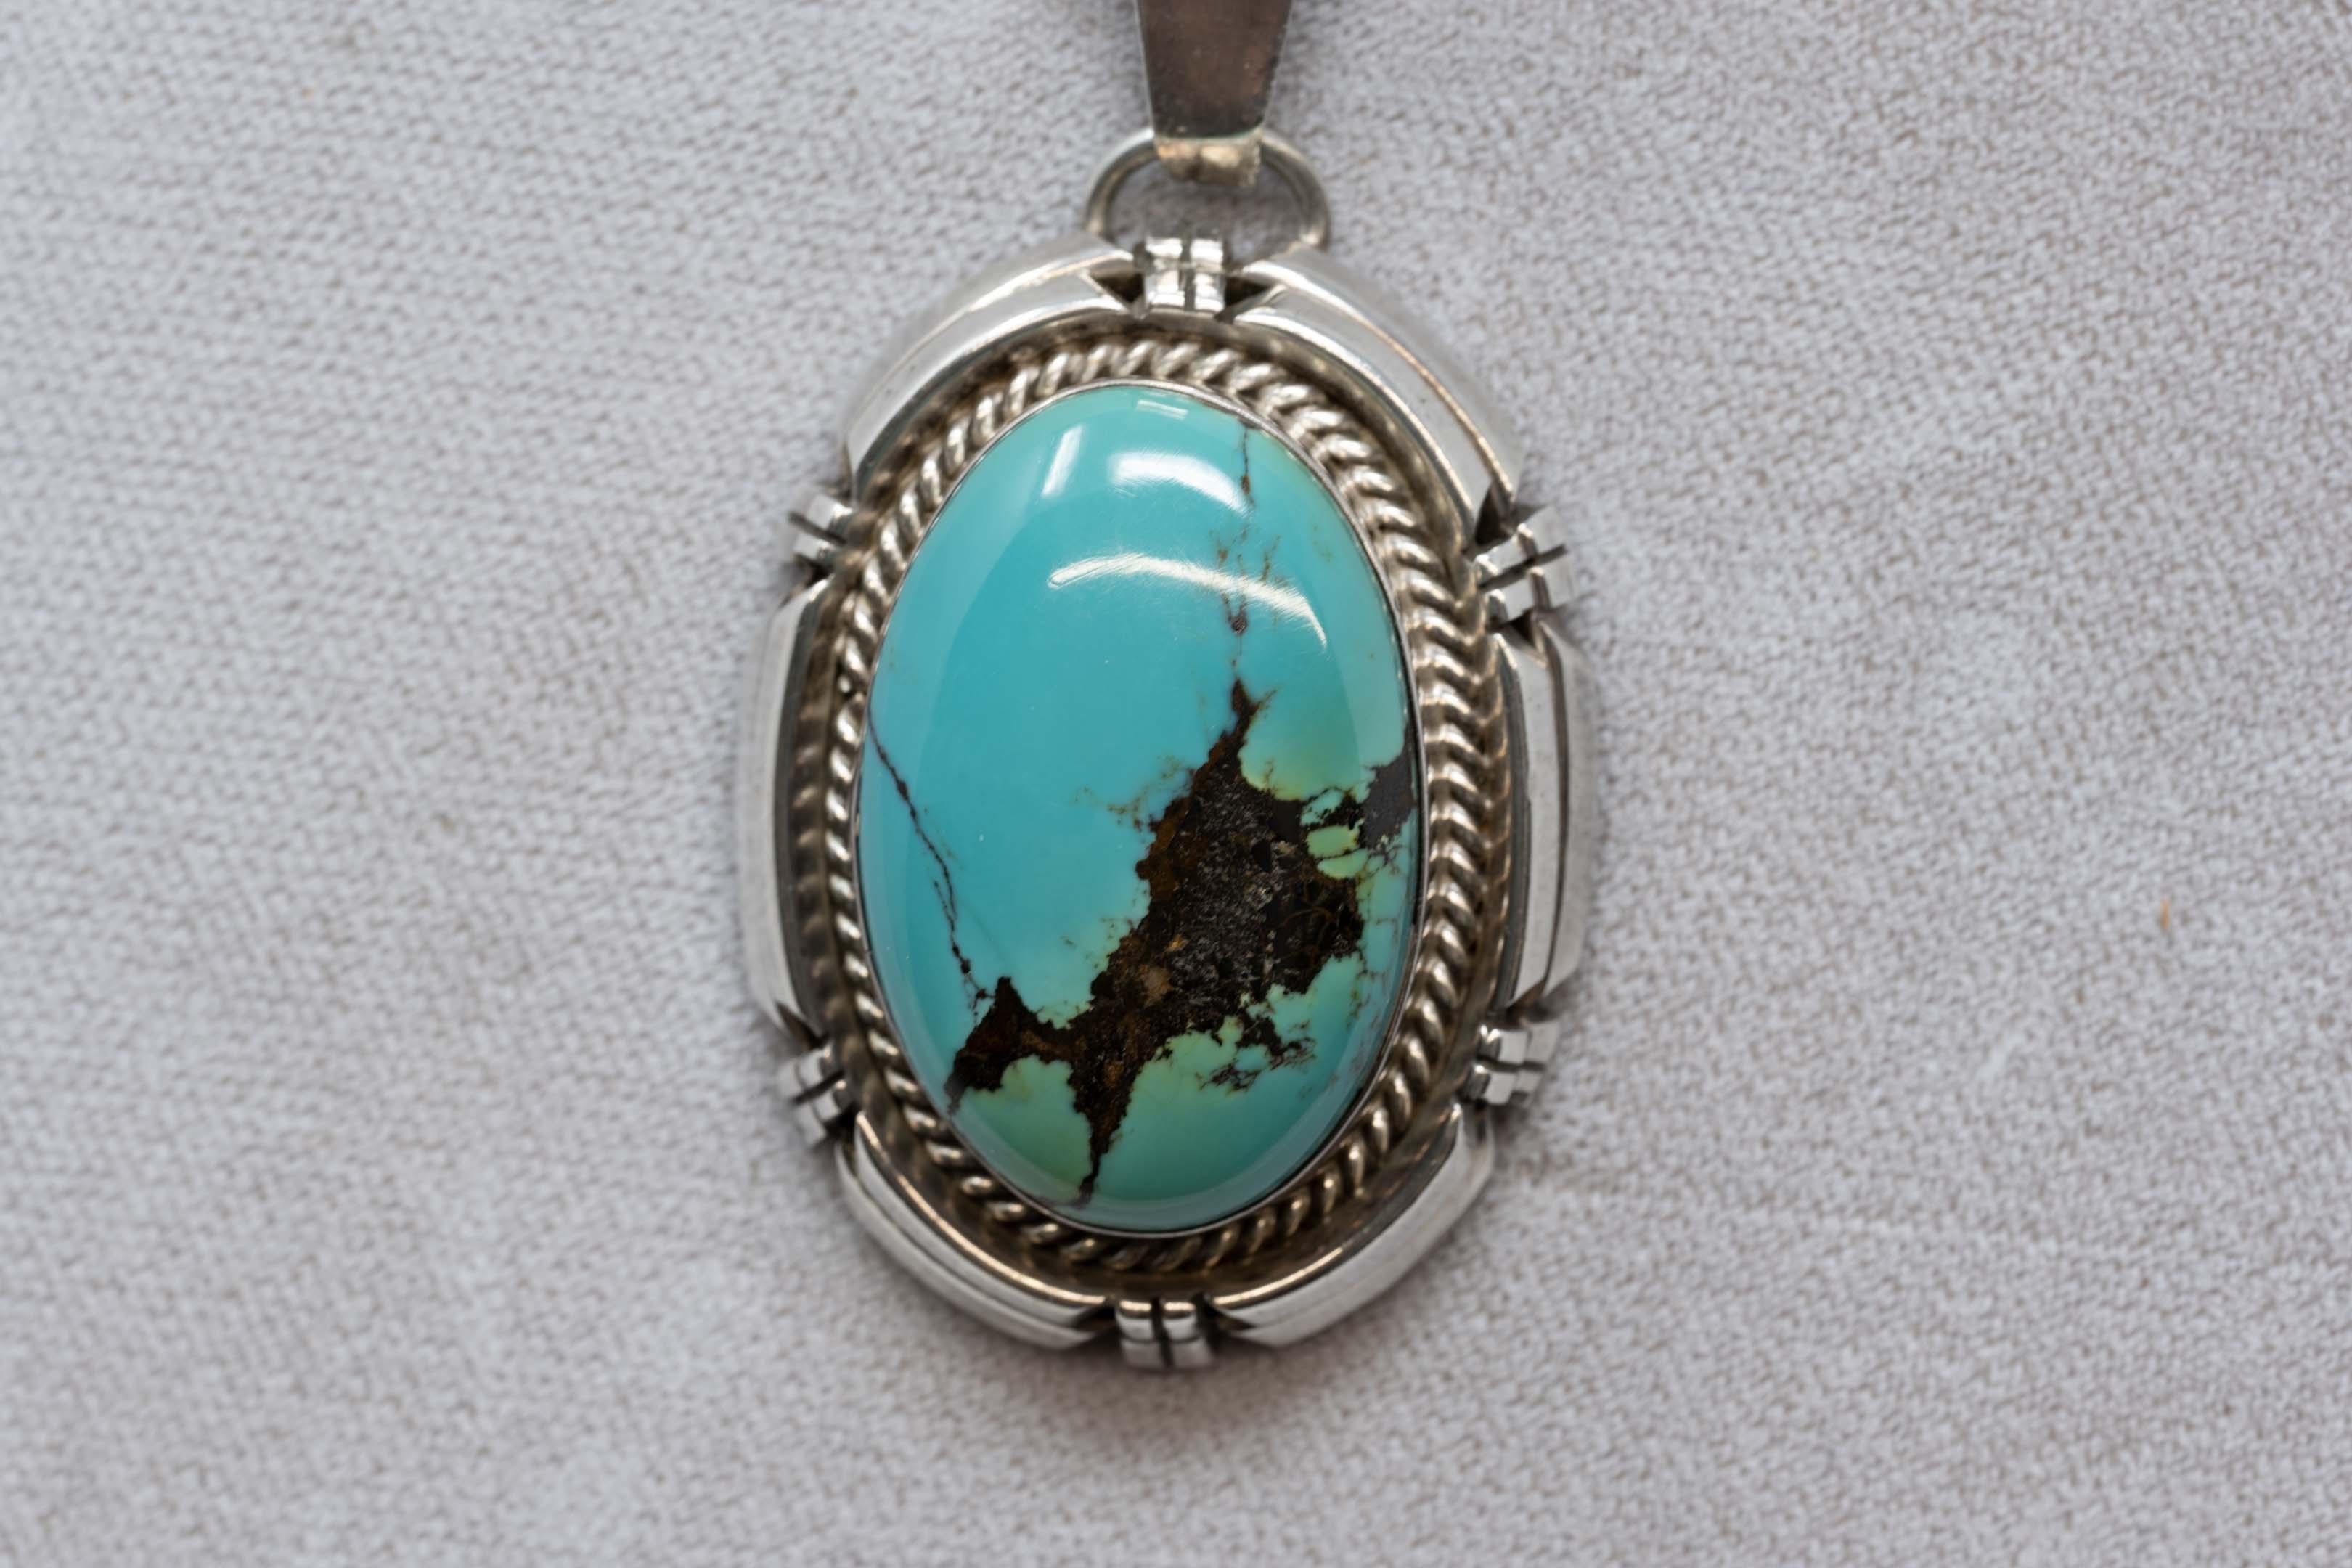 Pendentif en argent turquoise signé et réalisé par Rita Touchine, orfèvre Navajo. La pierre mesure 32 x 22 mm, le pendentif mesure 45 x 33 mm sans le loup. Fabriqué aux États-Unis à la fin du XXe siècle.